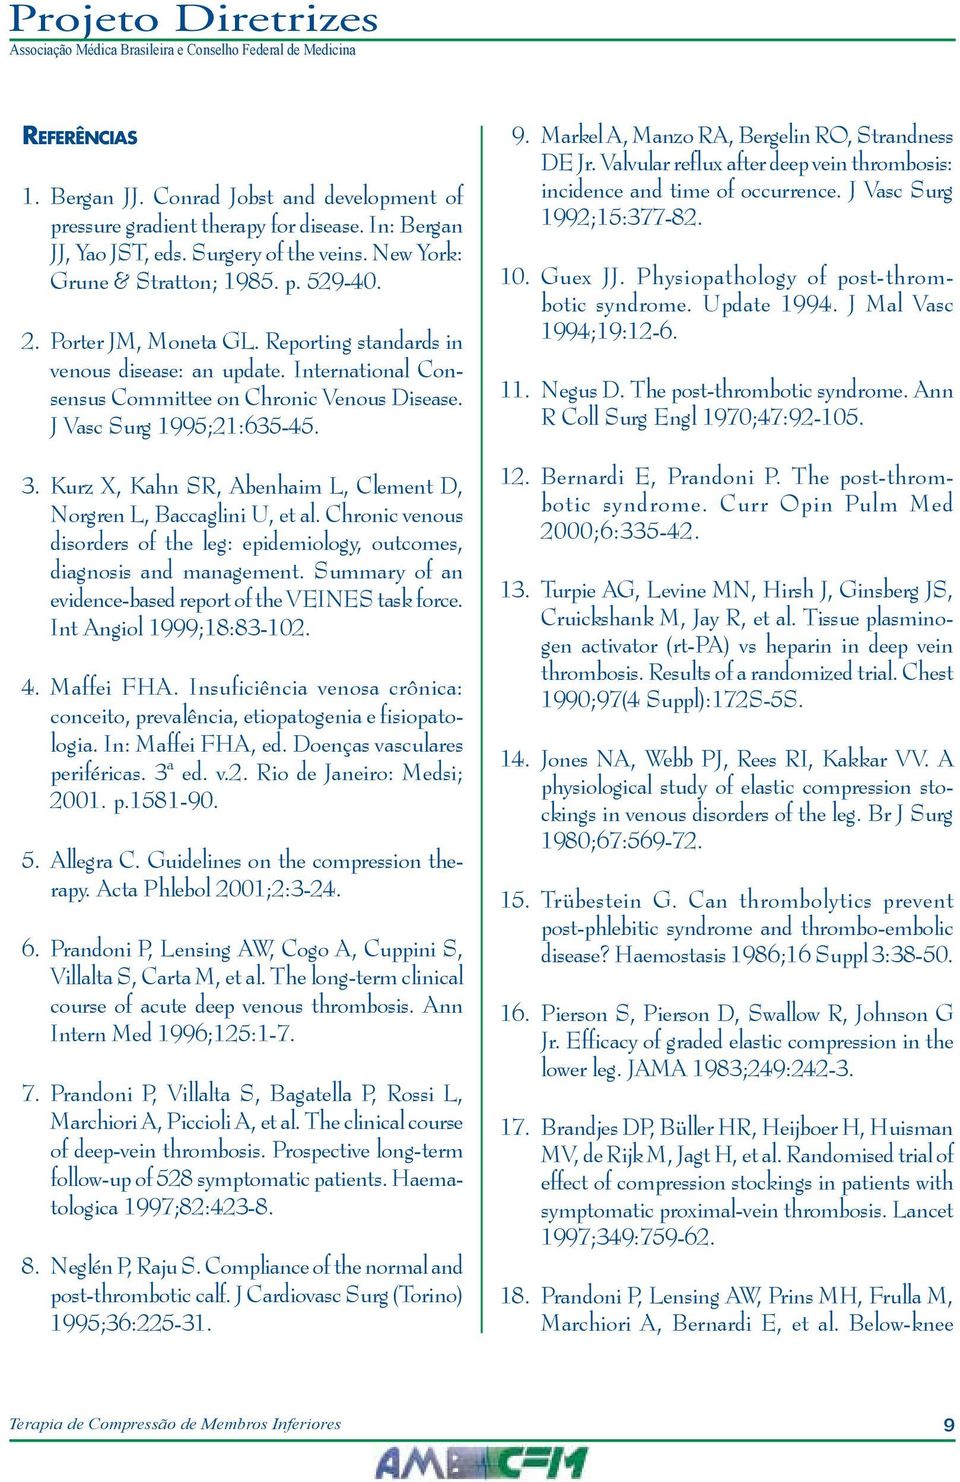 Kurz X, Kahn SR, Abenhaim L, Clement D, Norgren L, Baccaglini U, et al. Chronic venous disorders of the leg: epidemiology, outcomes, diagnosis and management.